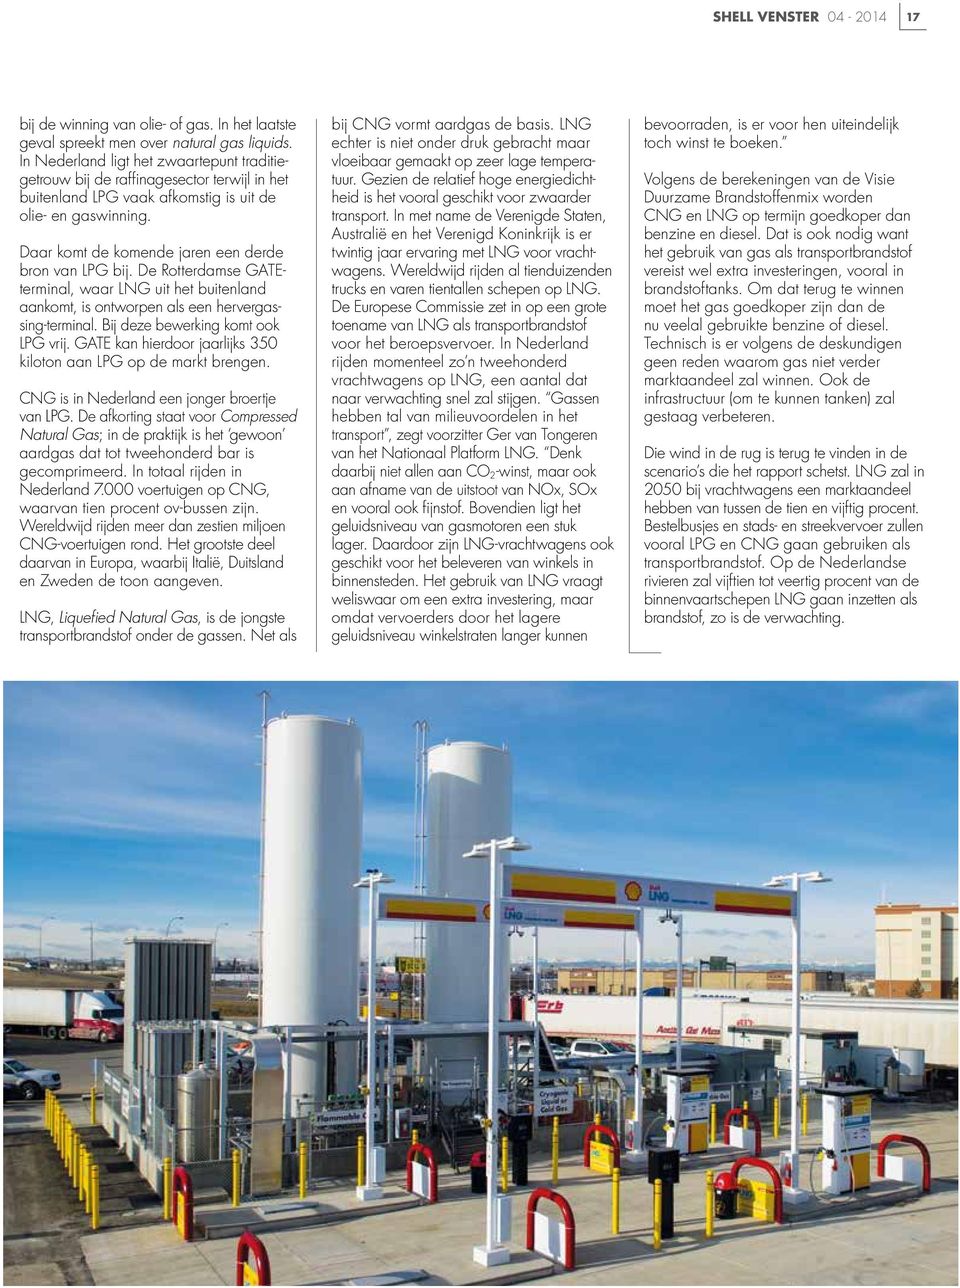 Daar komt de komende jaren een derde bron van LPG bij. De Rotterdamse GATEterminal, waar LNG uit het buitenland aankomt, is ontworpen als een hervergassing-terminal.